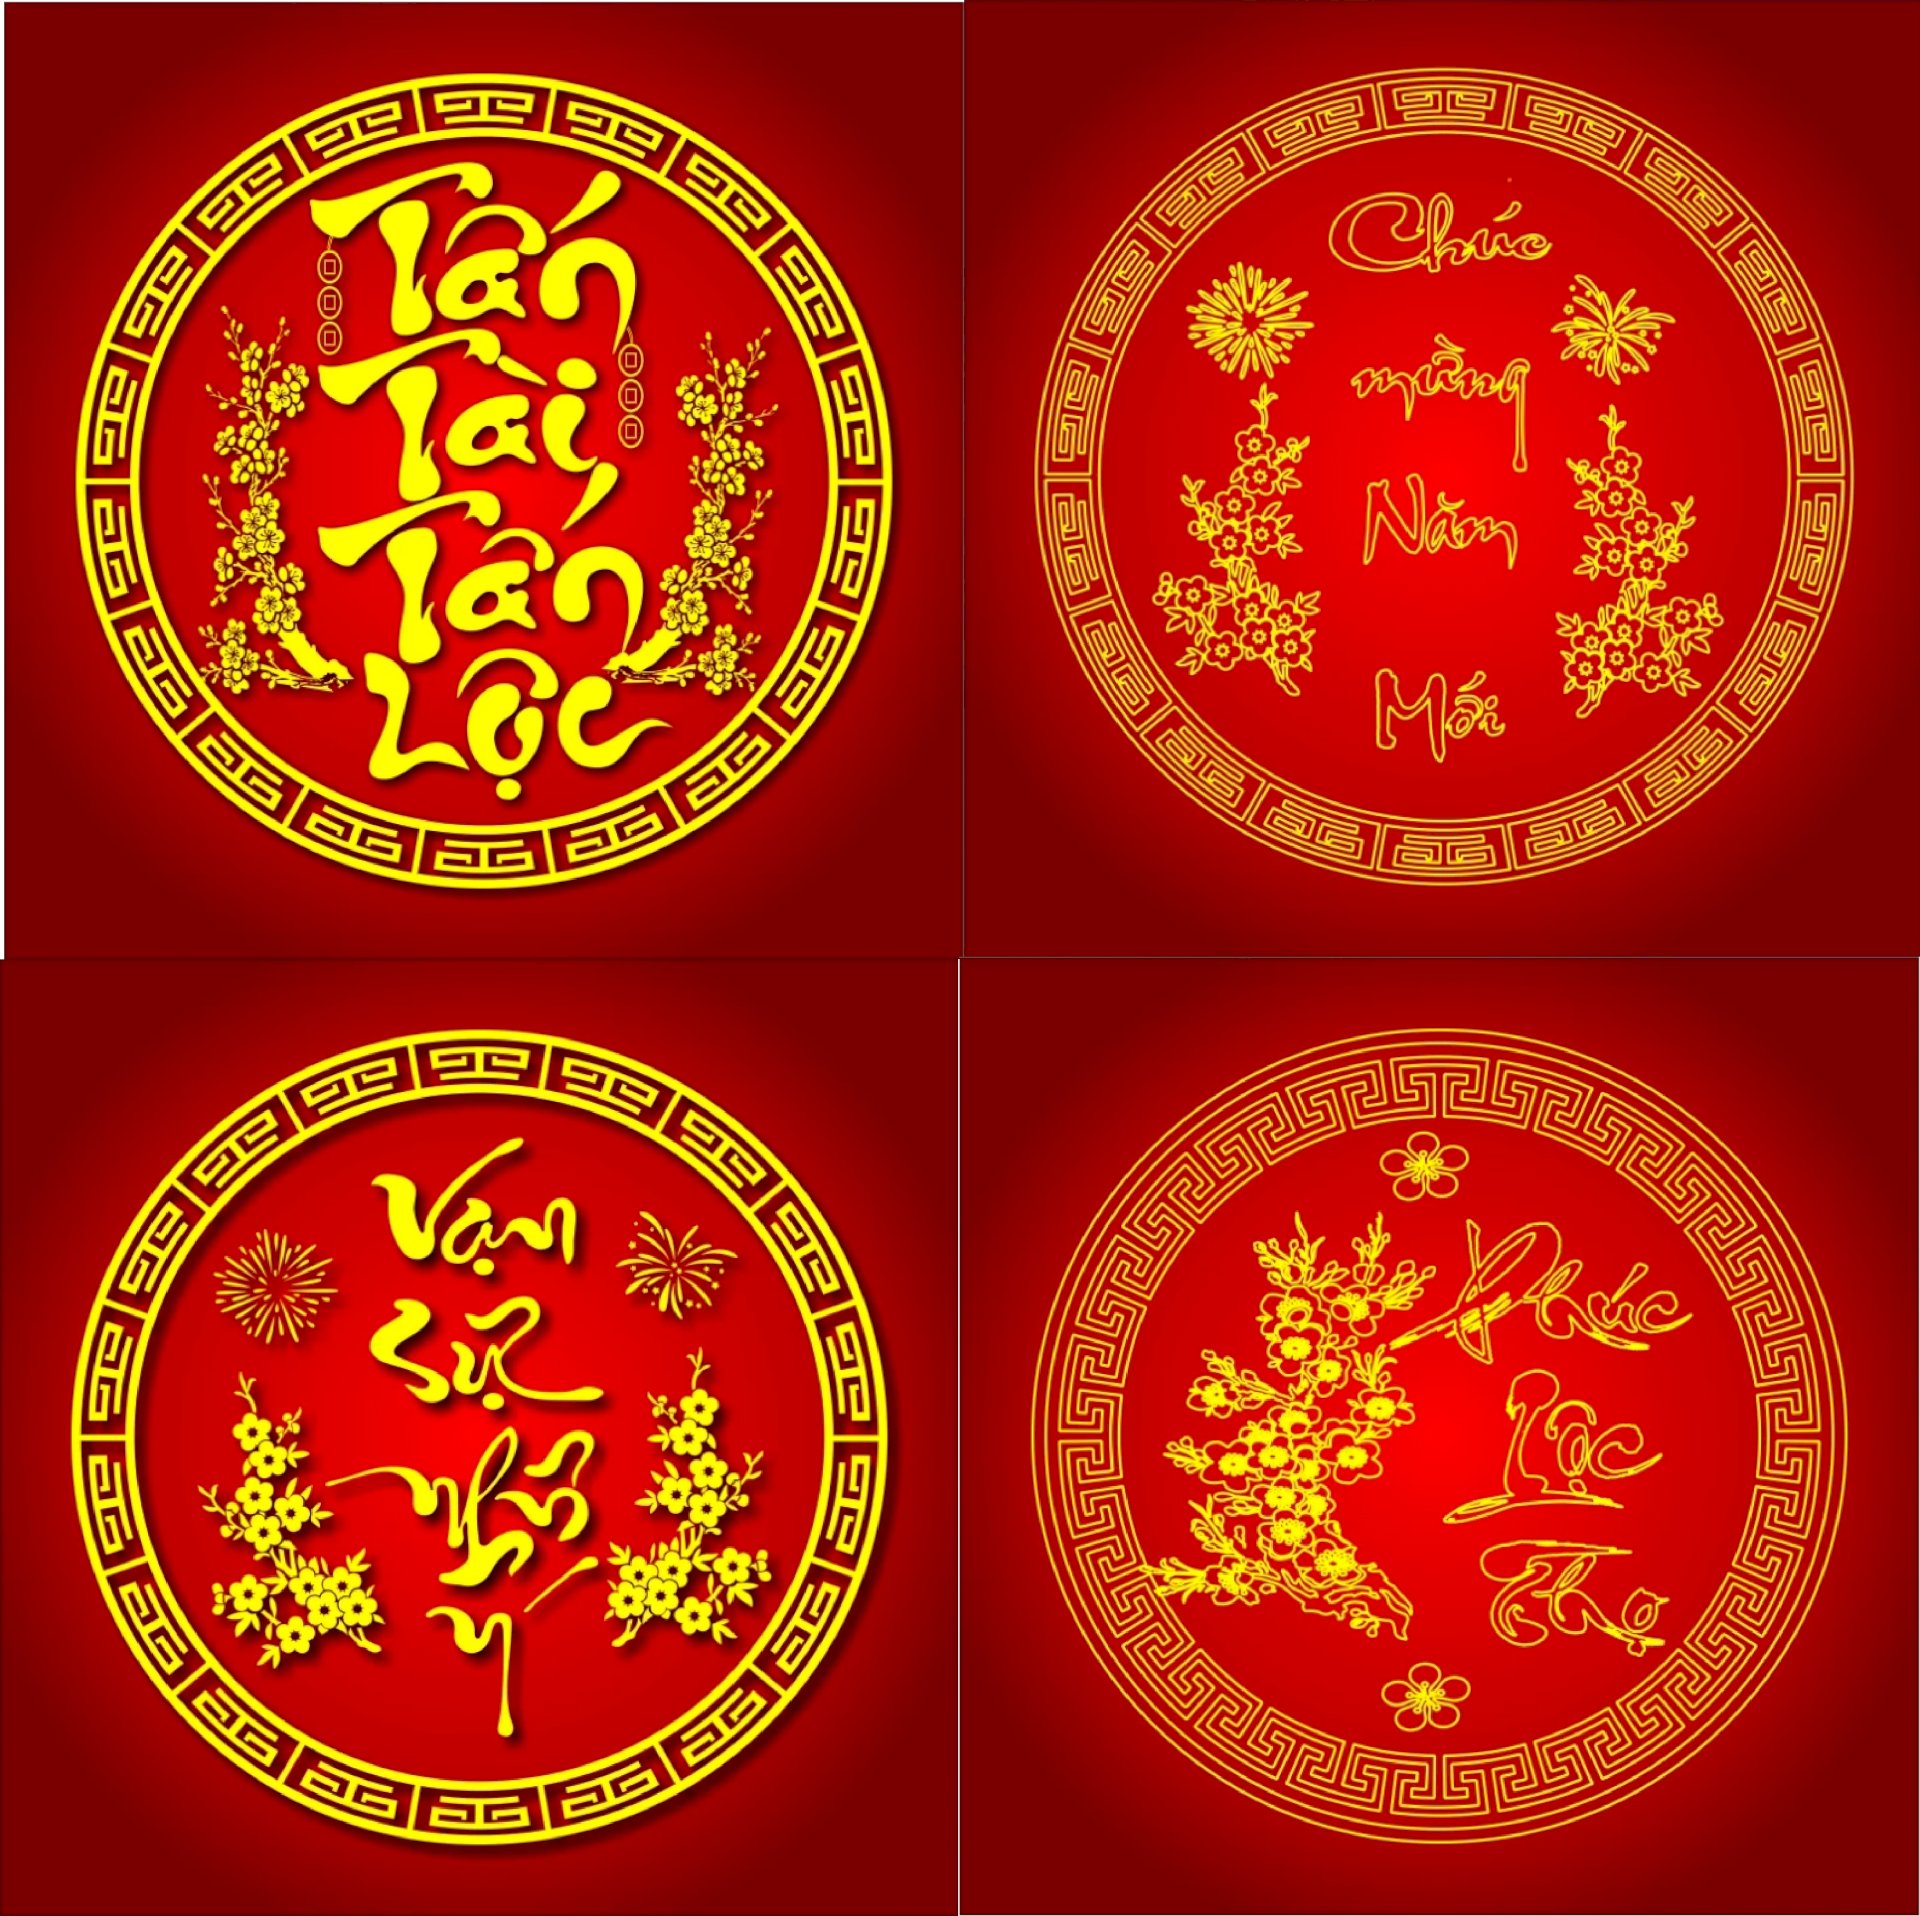 Con Trâu, Tết Tân Sửu, Tết Cổ Truyền Dân Tộc: Tận hưởng không khí Tết Tân Sửu đầy màu sắc với các thiết kế liên quan đến con trâu - biểu tượng của năm